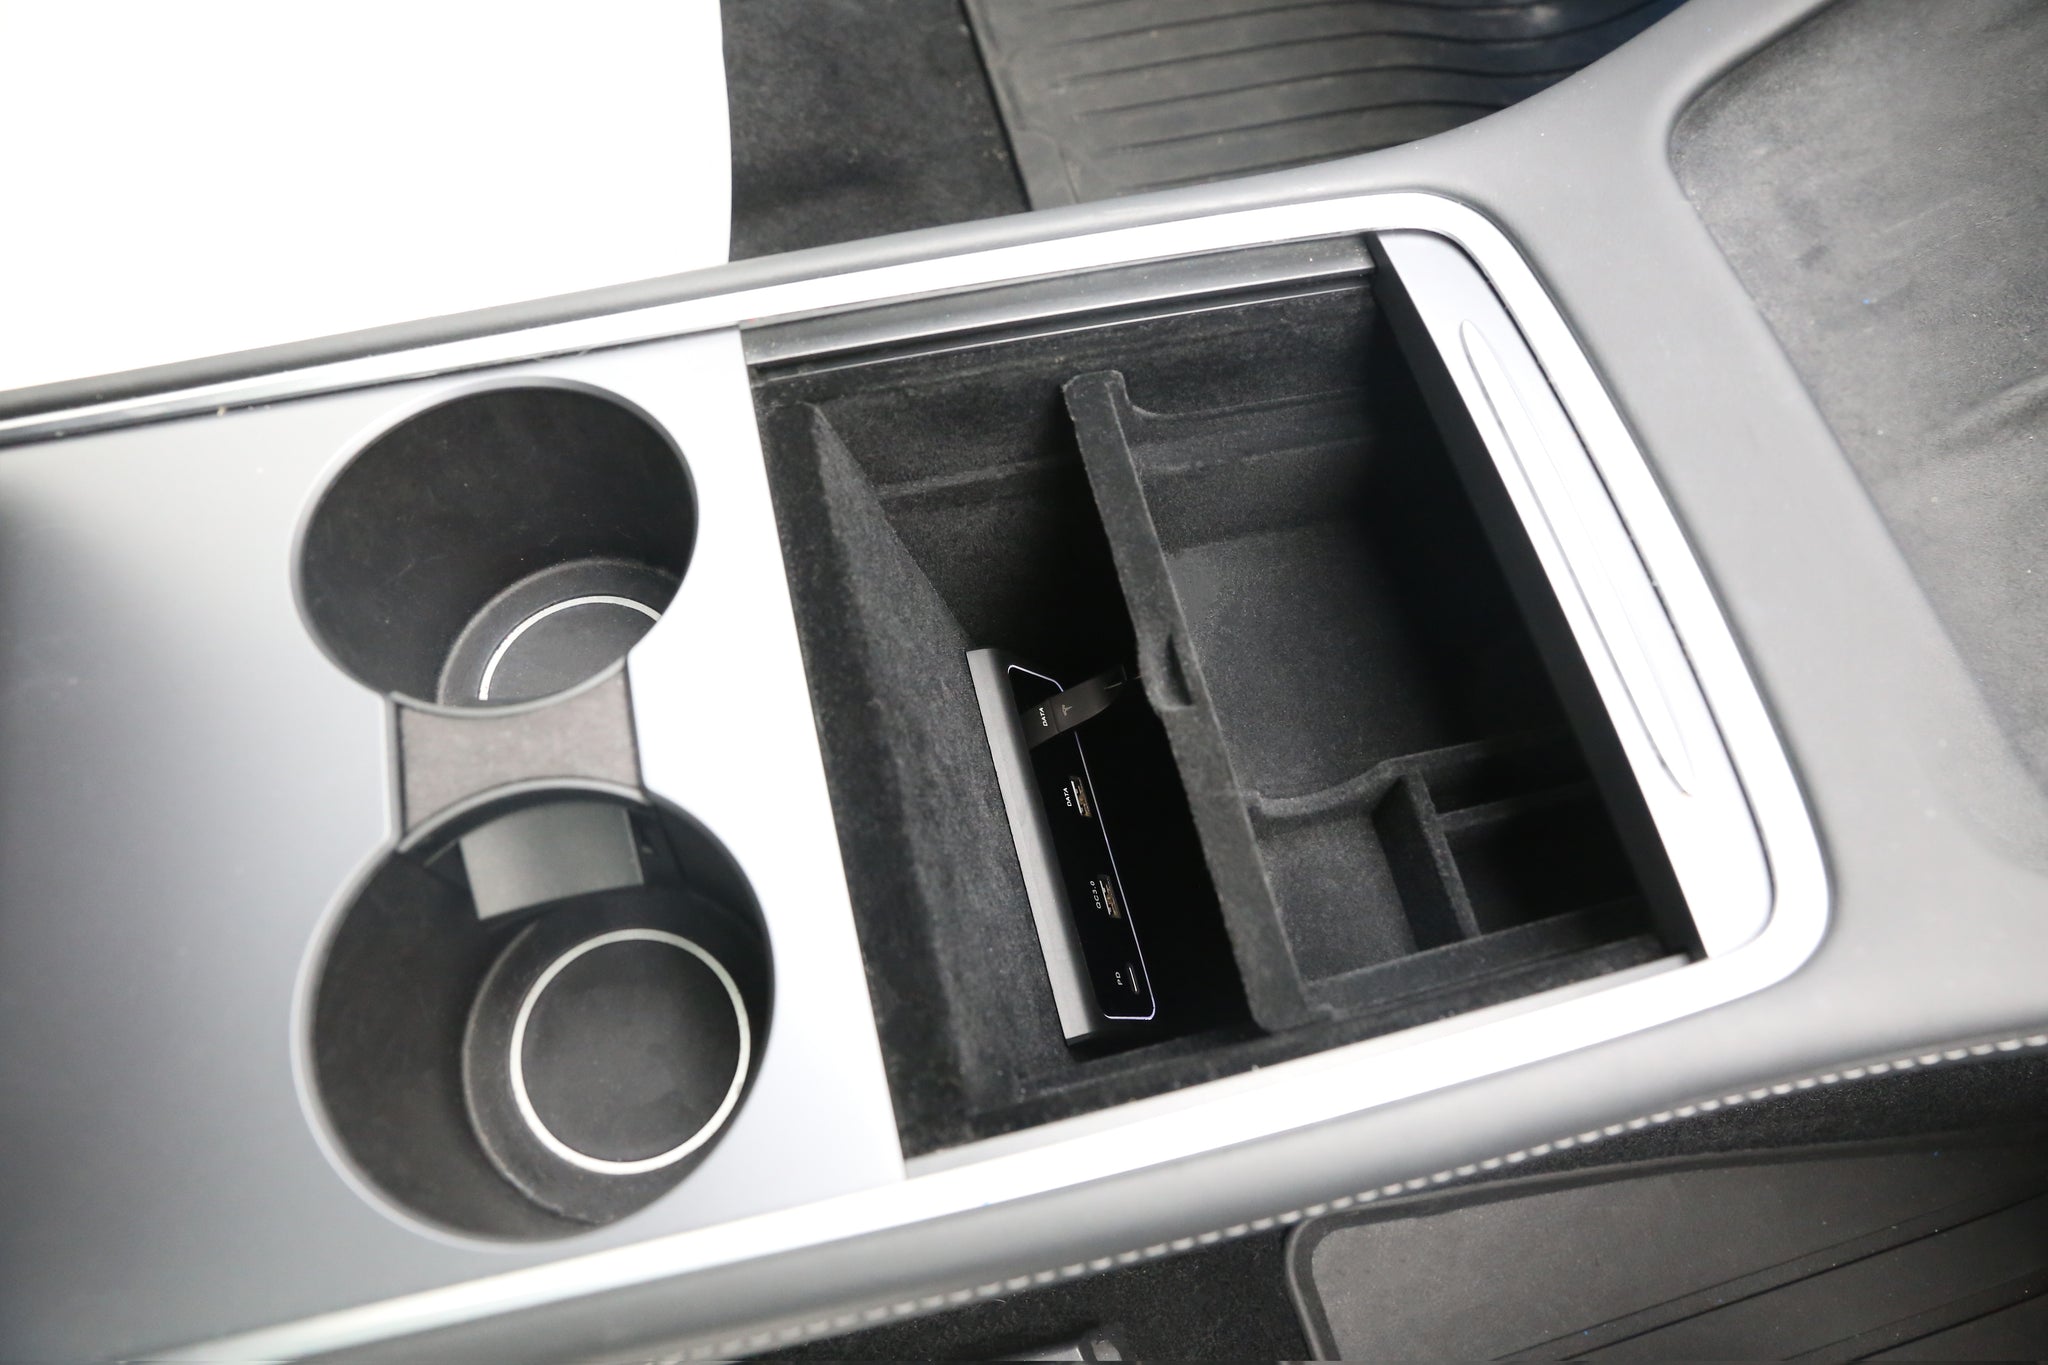 Multi-USB-Hub, Zubehör für die Mittelkonsole im Autoinnenraum mit  5-in-1-Anschlüssen für Tesla Model 3 – die besten Artikel im Online-Shop  Joom Geek